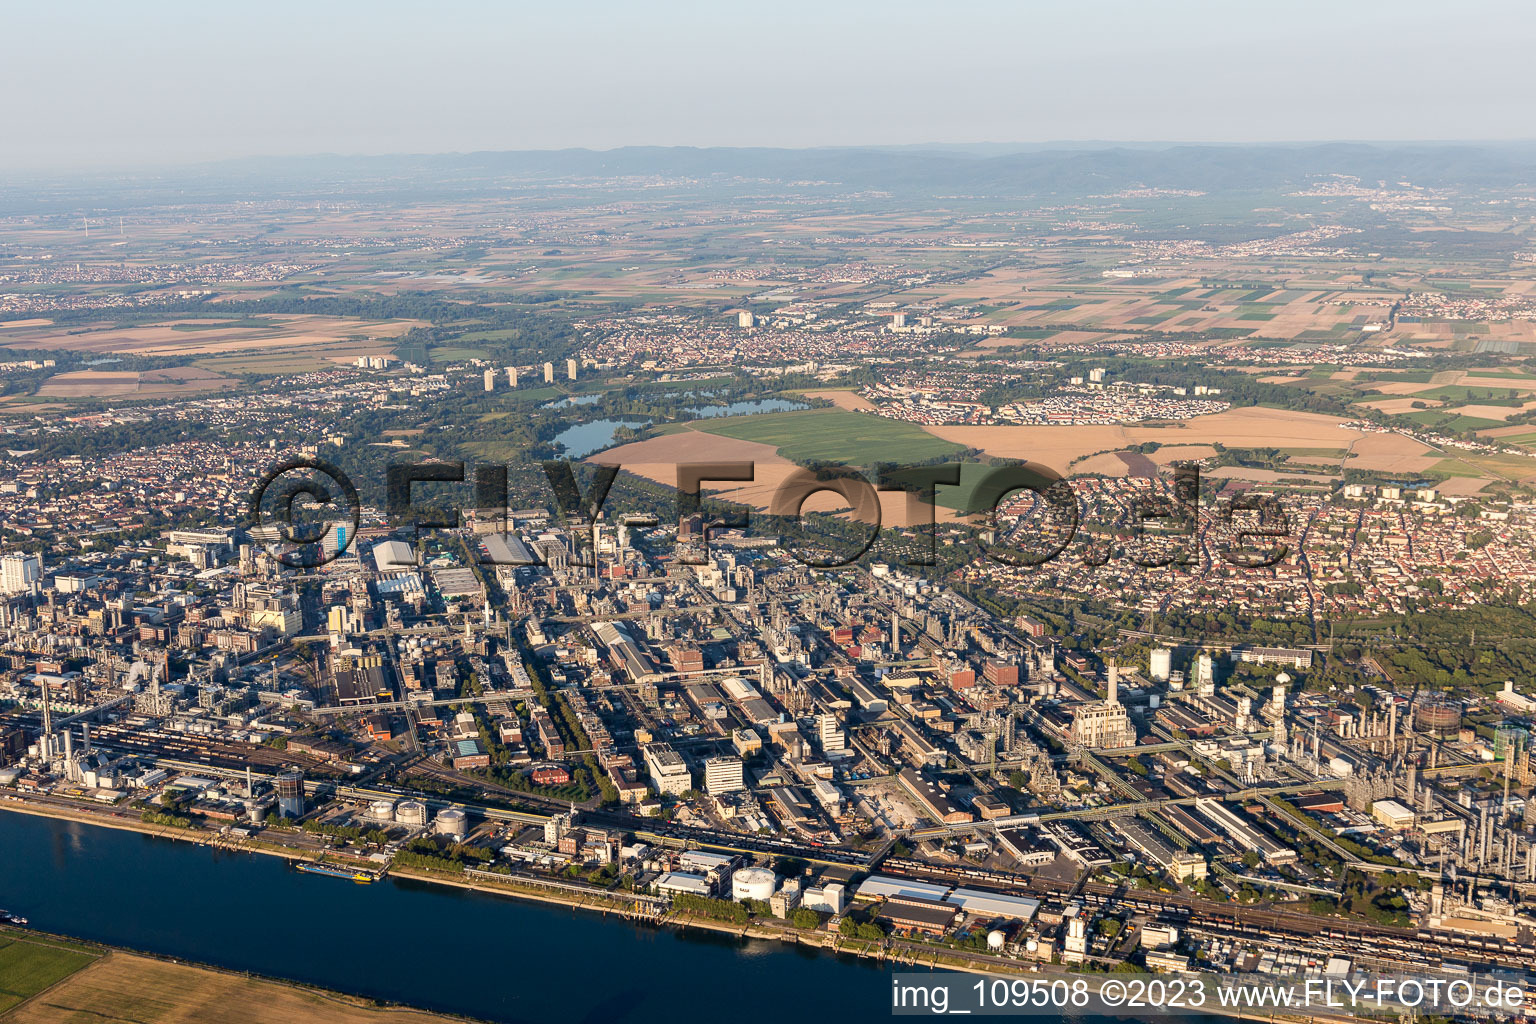 Luftbild von Ortsteil BASF in Ludwigshafen am Rhein im Bundesland Rheinland-Pfalz, Deutschland